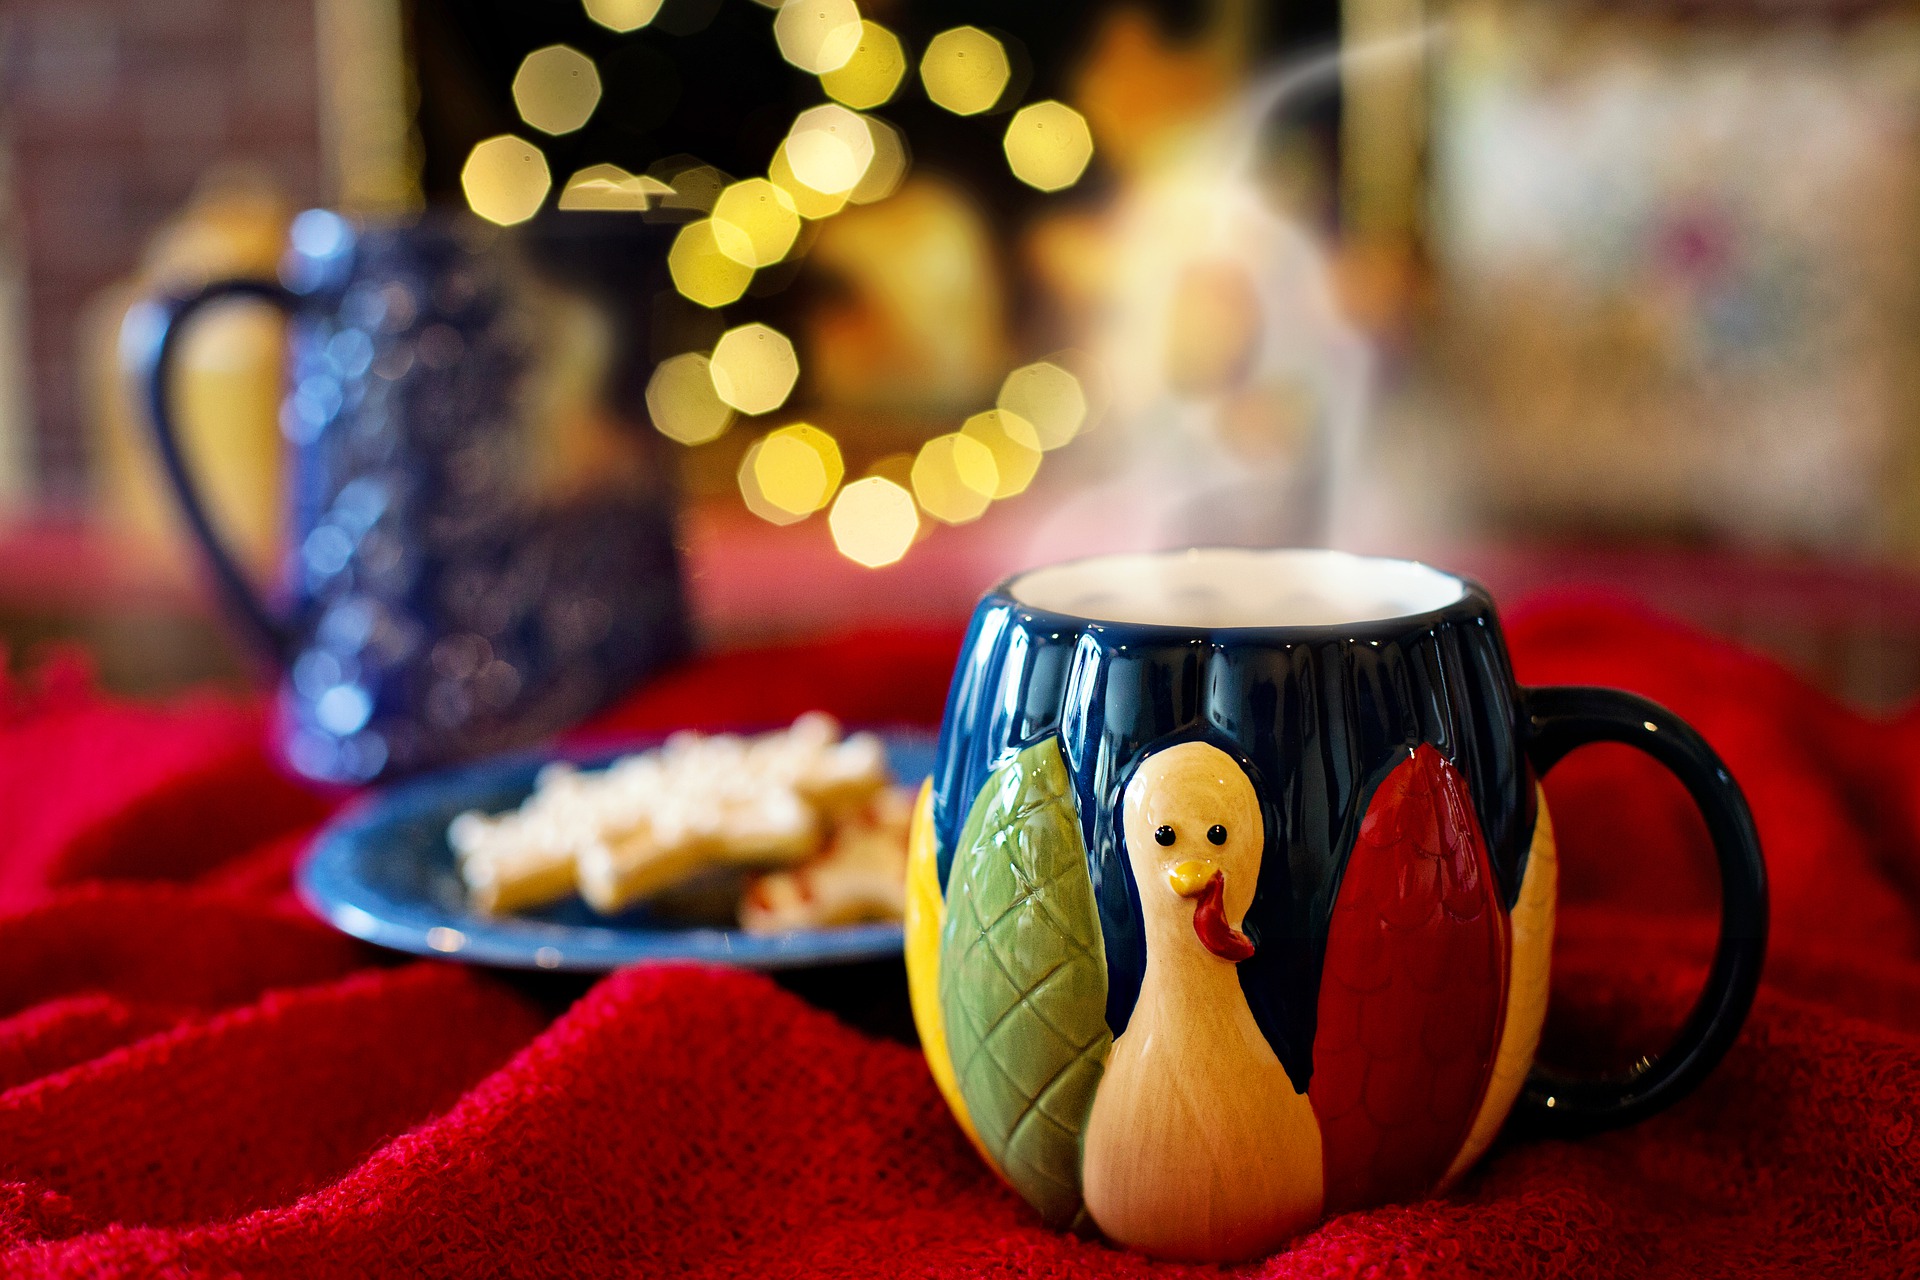 El chocolate a la taza es el postre favorito de muchos golosos en Navidad